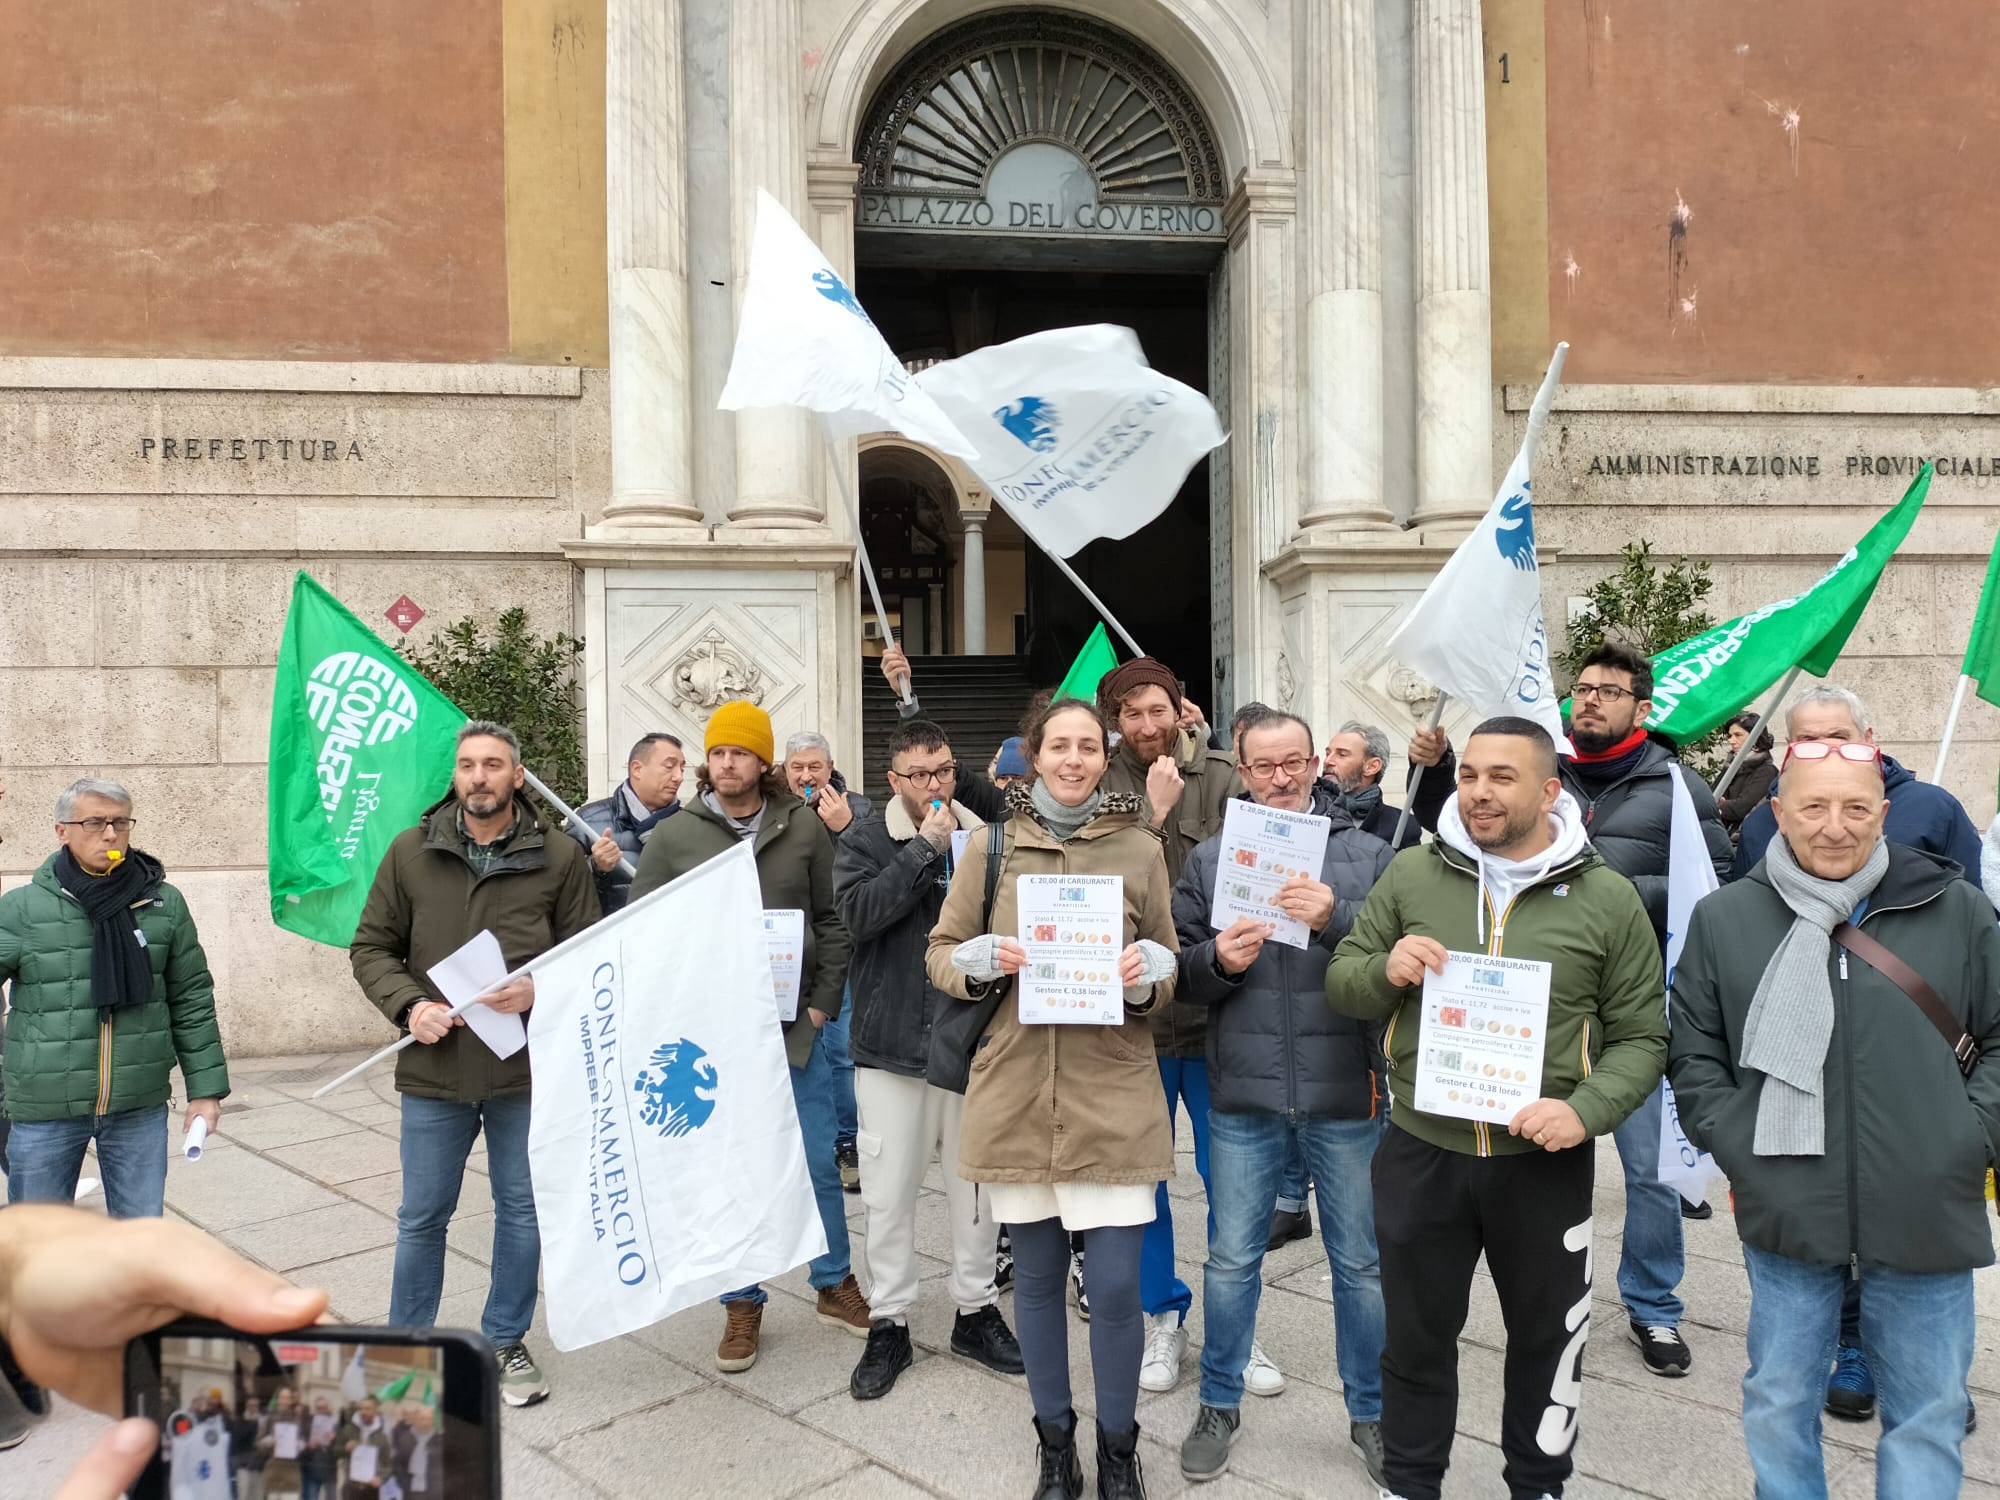 Benzinai verso riduzione dello sciopero a 24 ore, oggi il presidio a Genova in Prefettura